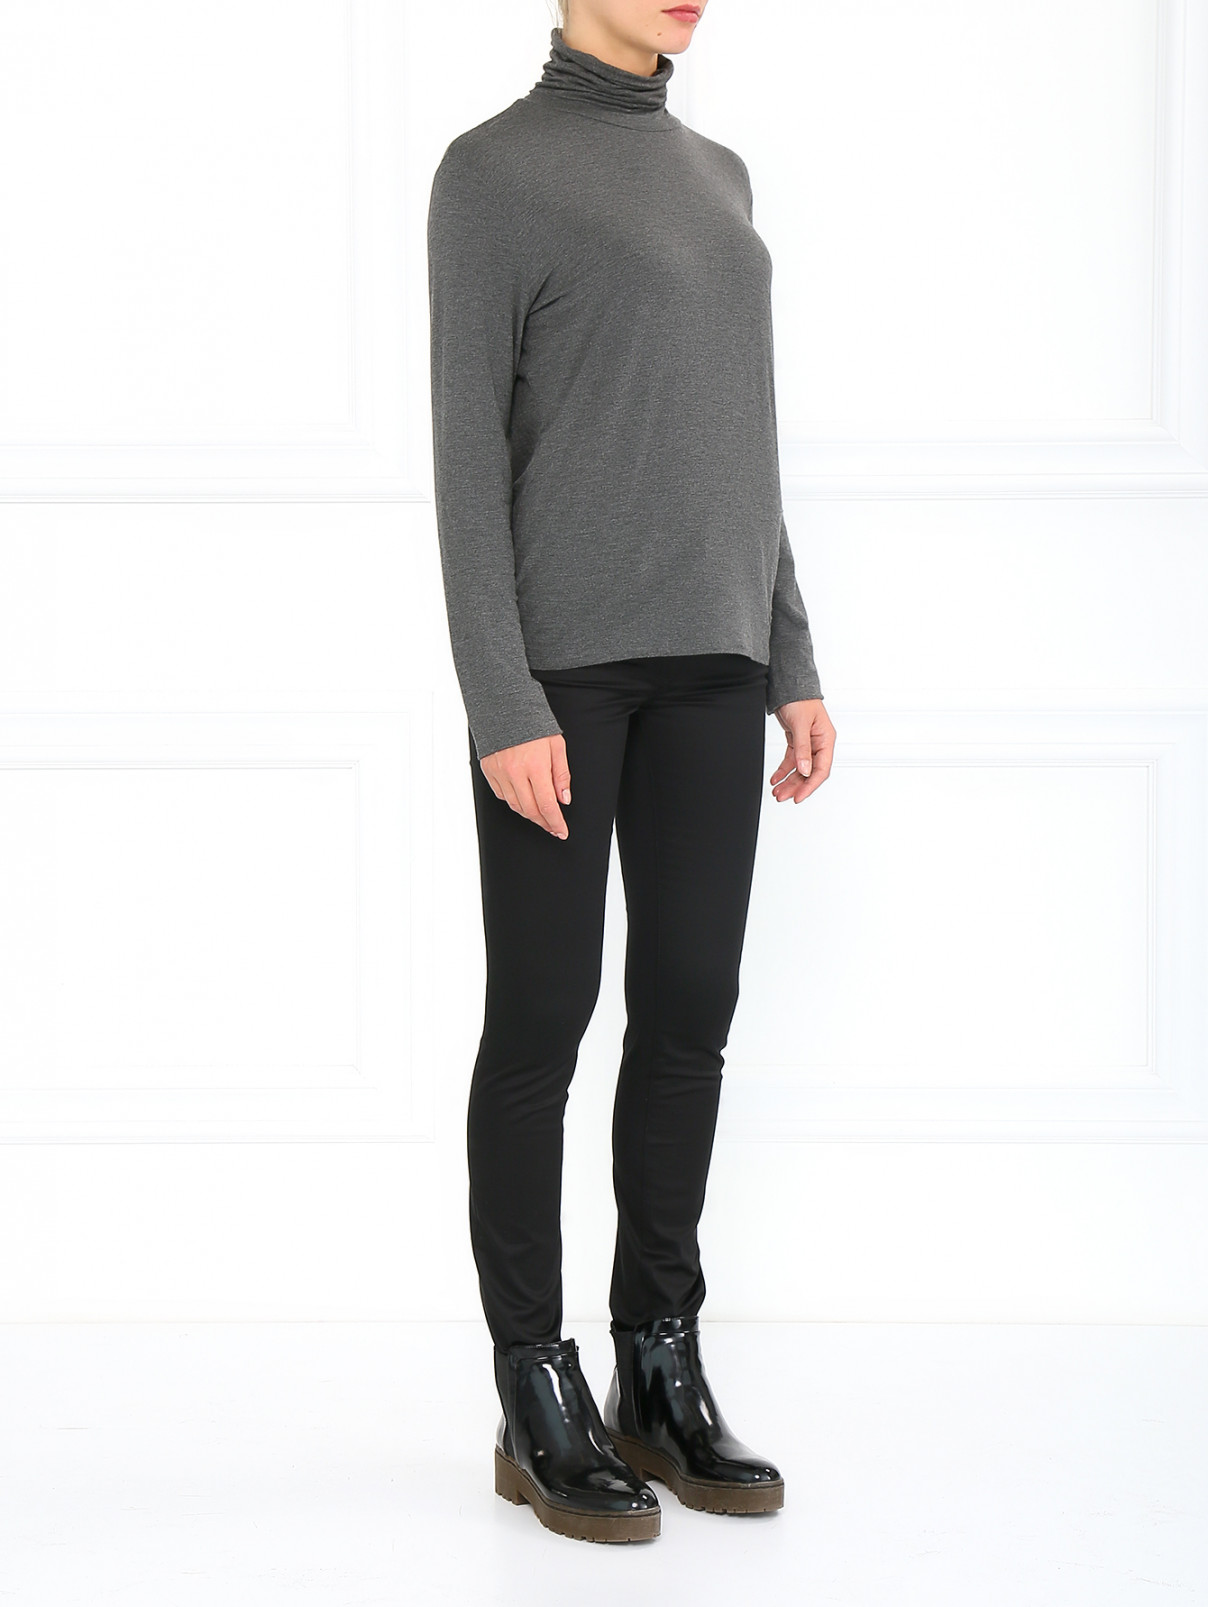 Узкие брюки из хлопка и вискозы Jil Sander  –  Модель Общий вид  – Цвет:  Черный